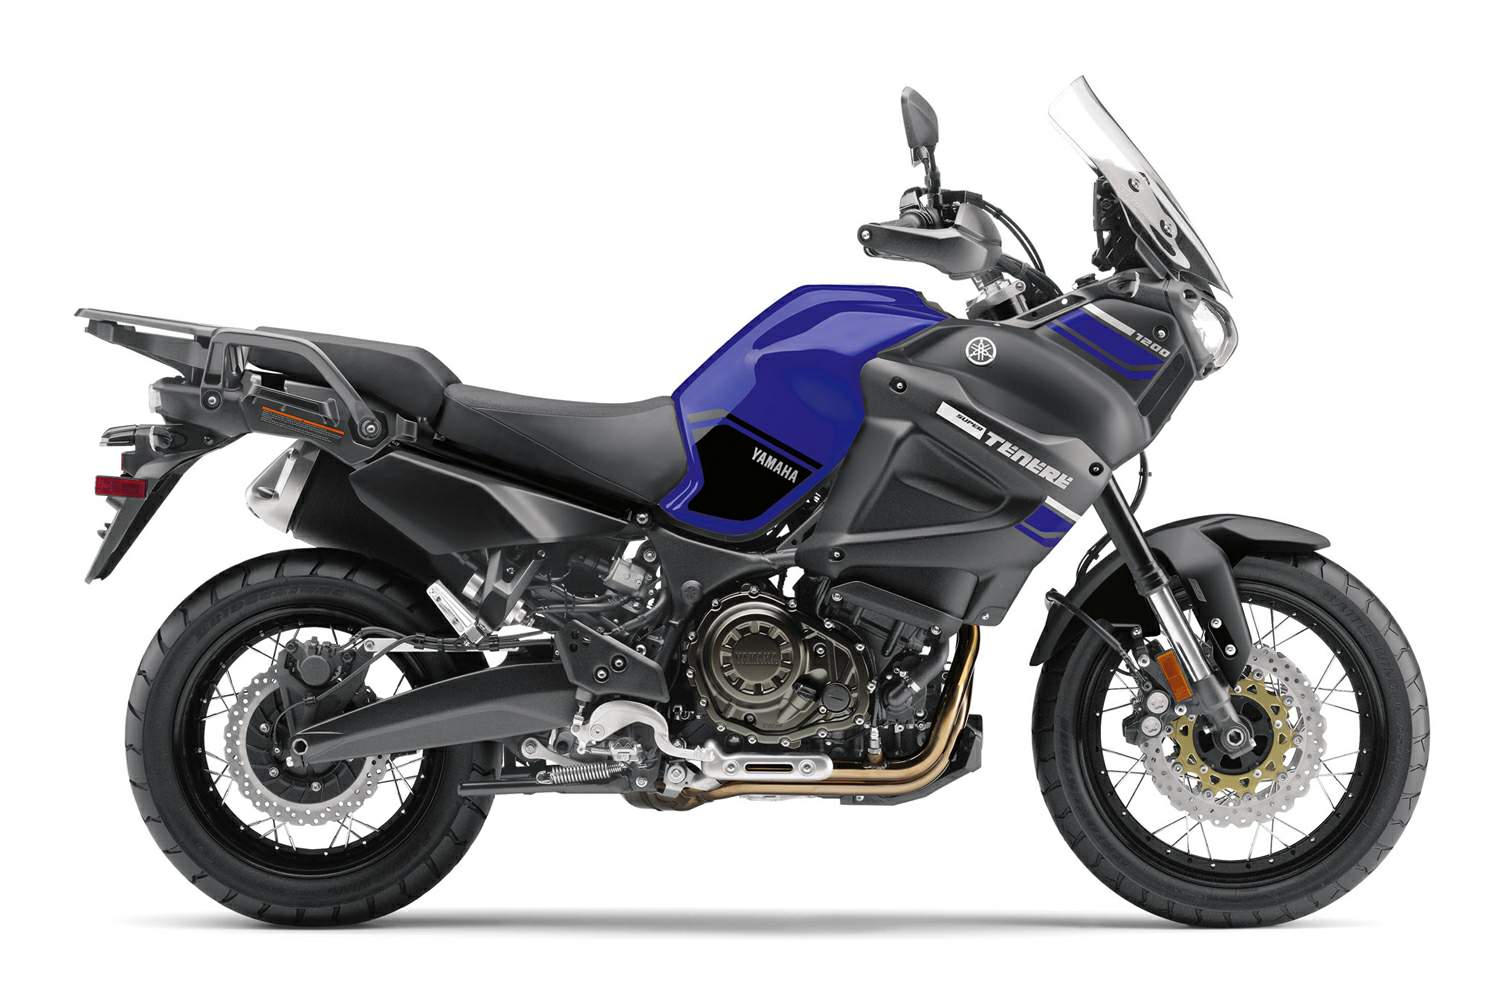 Yamaha XT 1200ZE/ES Super Ténéré For Sale Specifications, Price and Images